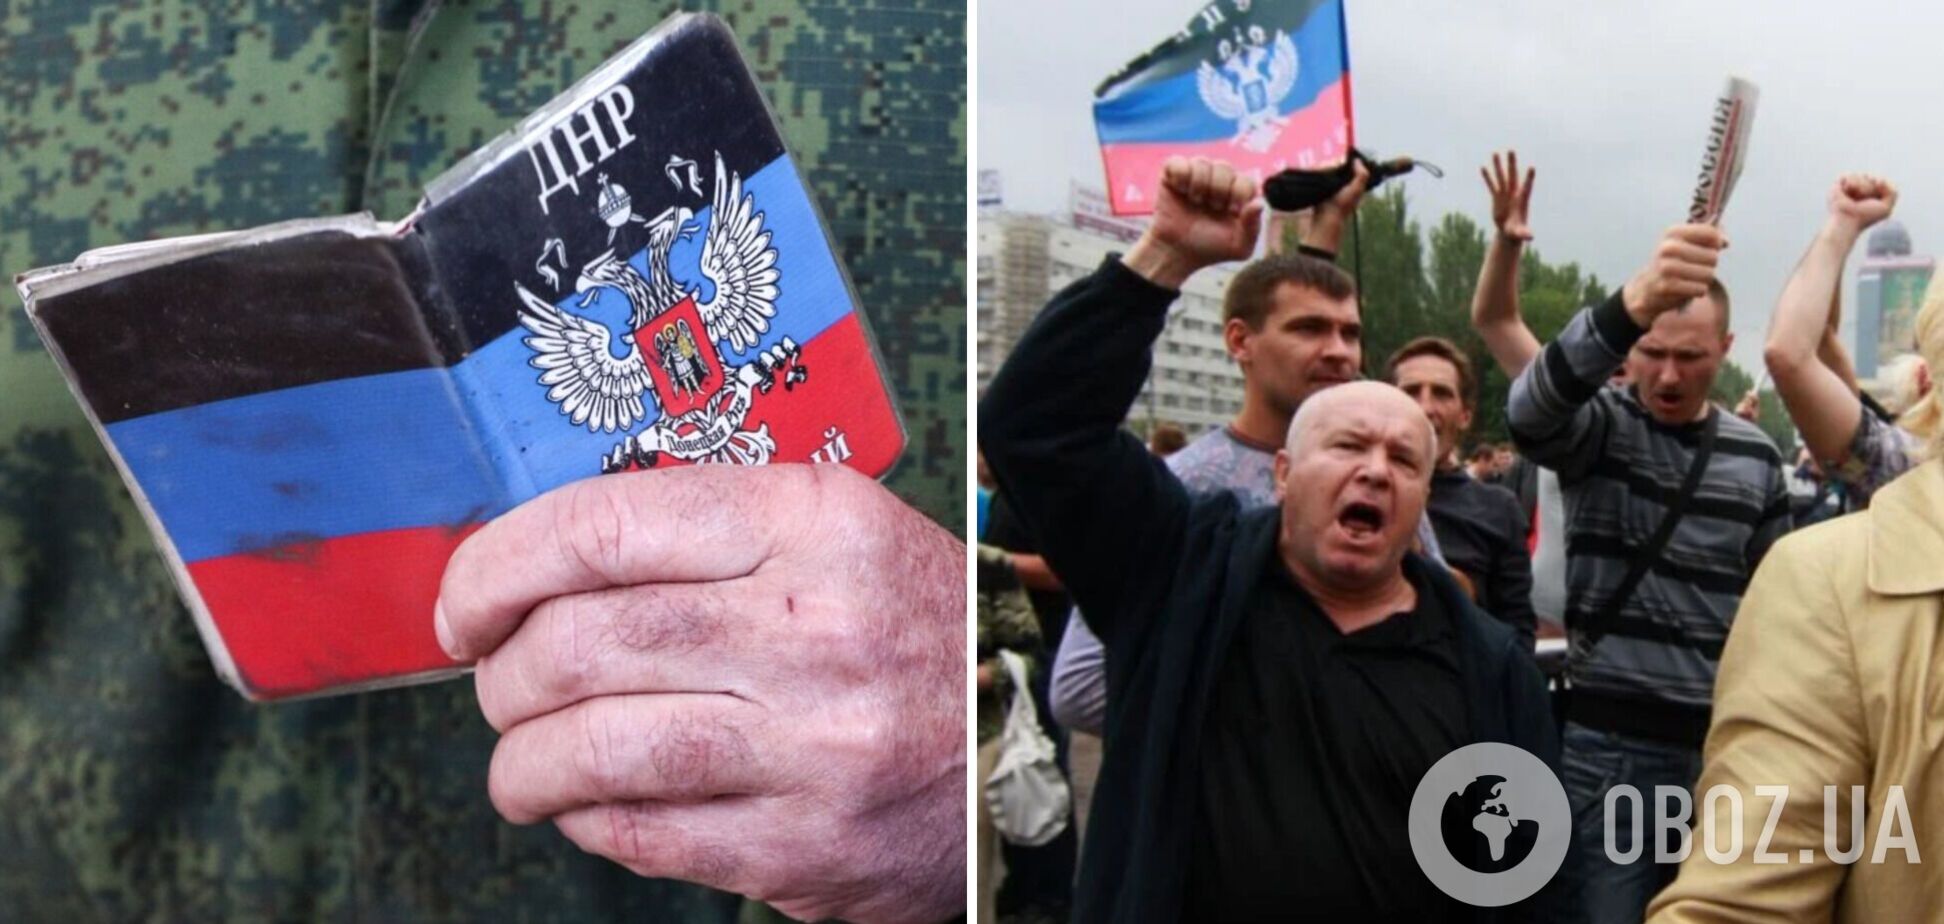 СБУ разоблачила планы РФ по поводу псевдореферендума для аннексии регионов Украины: хотят задействовать медиа